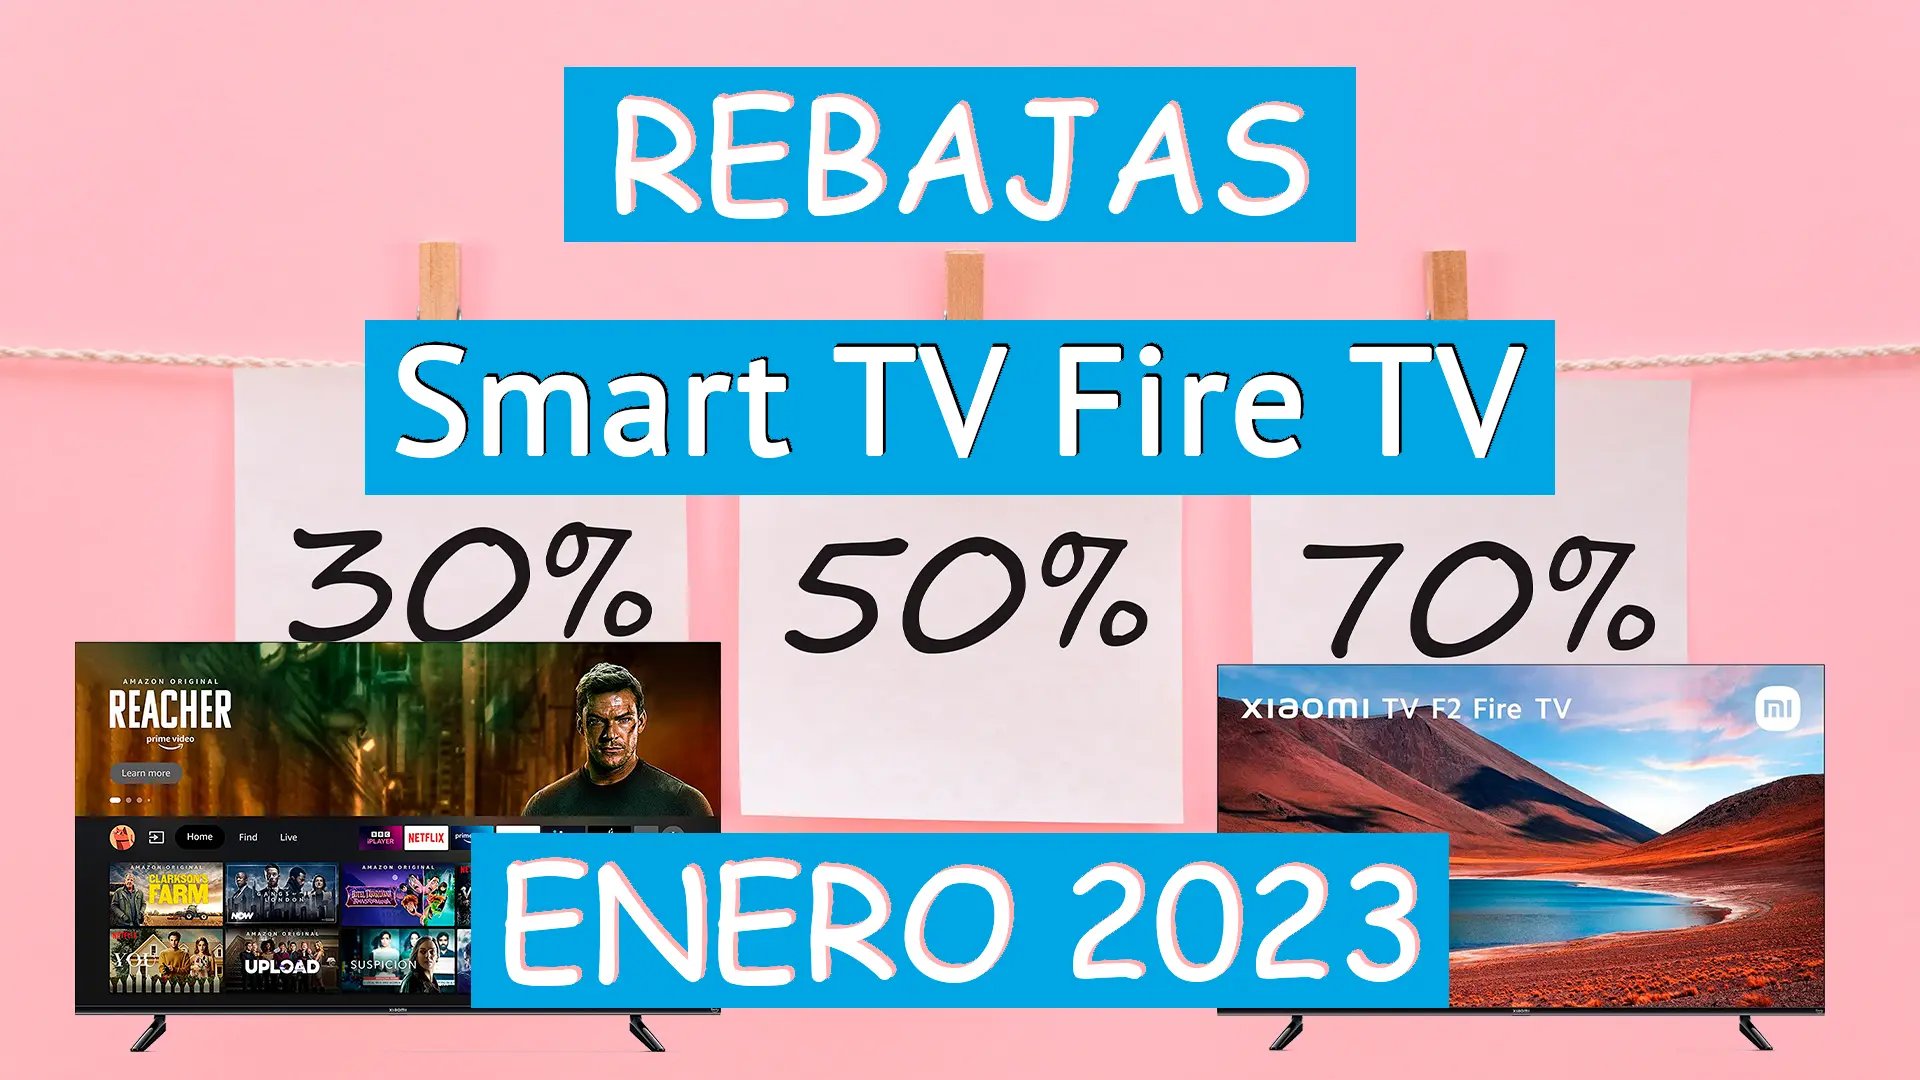 Rebajas Enero 2023 Smart TV Fire TV, ¡ya están aquí!